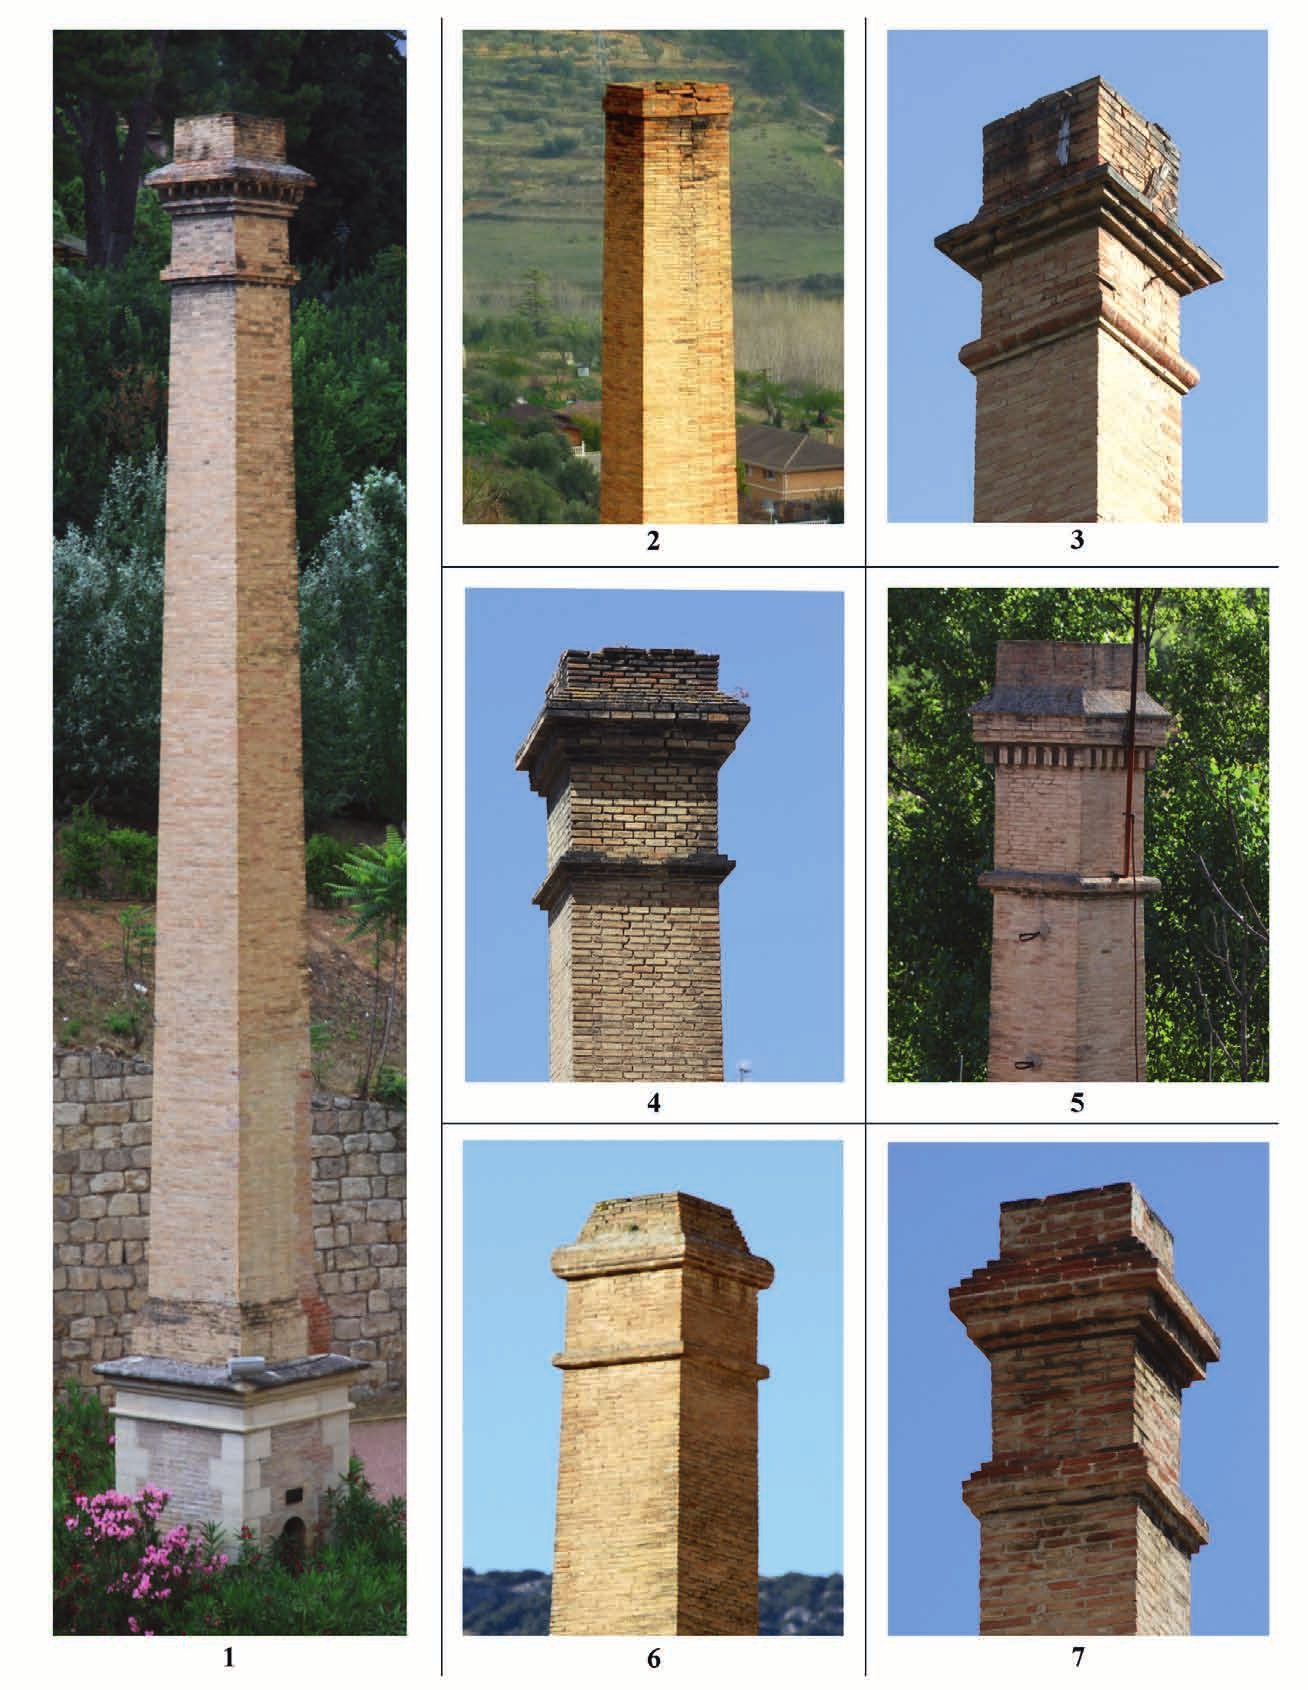 Las chimeneas de ladrillo en la circunscripción industrial de Alcoi Lámina IX. Ejemplos de chimeneas de fuste. 1. La Filera (núm. 39); 2. Molí del Racó (núm.